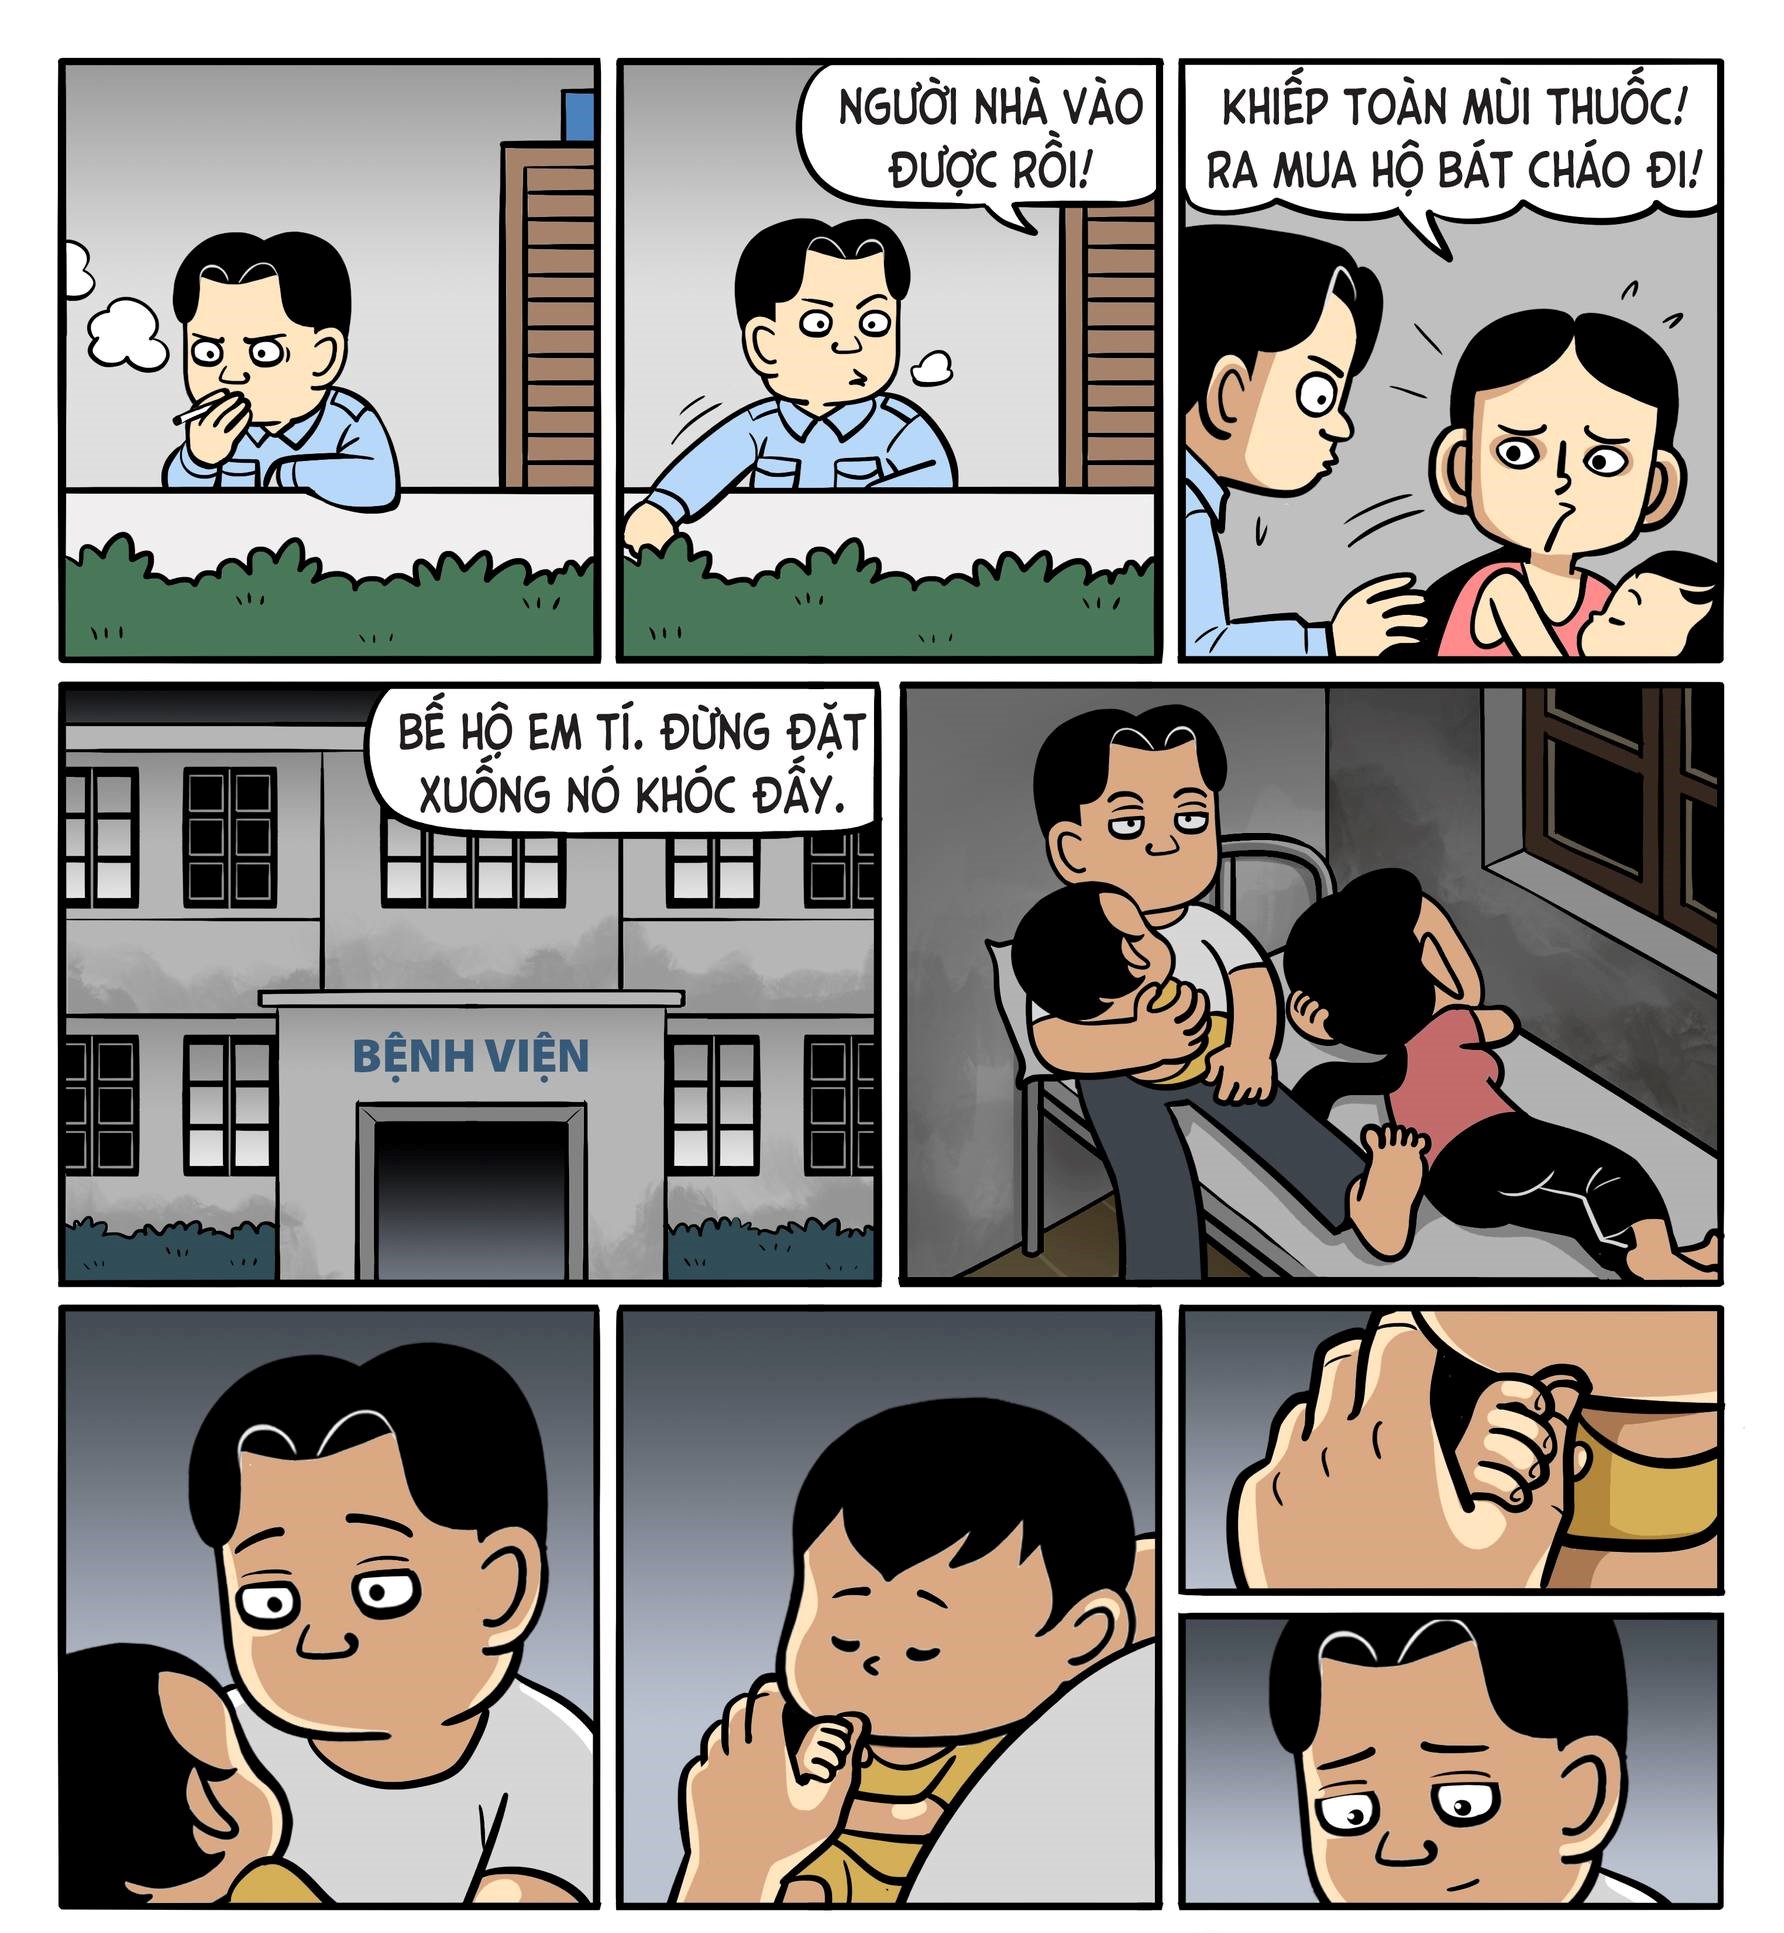 Cay mắt với bộ truyện tranh về tình cảm của bố và con gái - Ảnh 3.